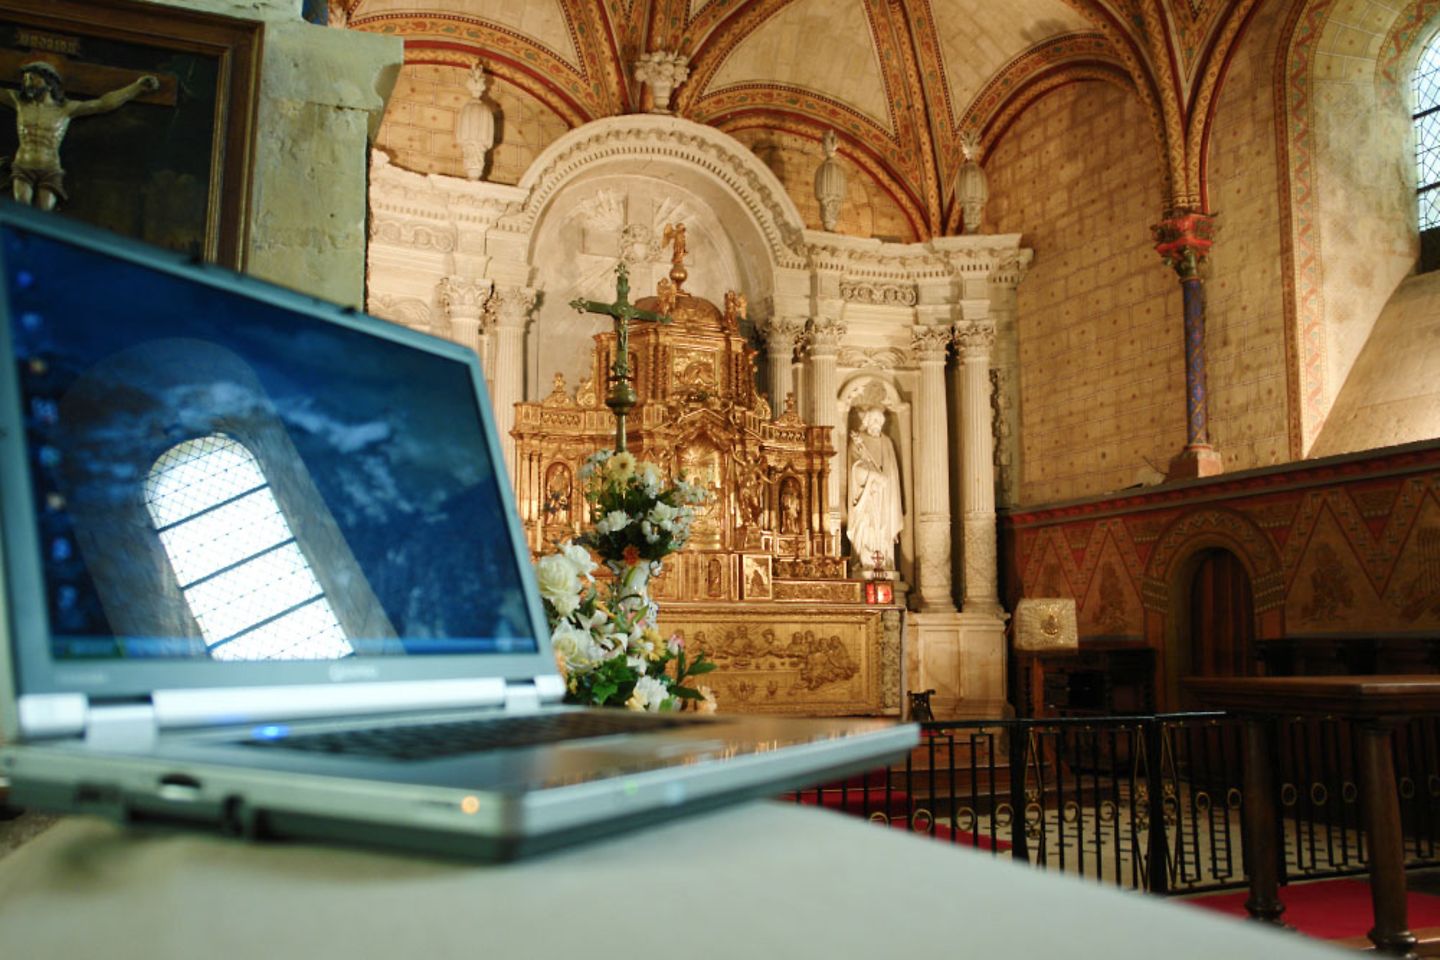 A laptop in a church